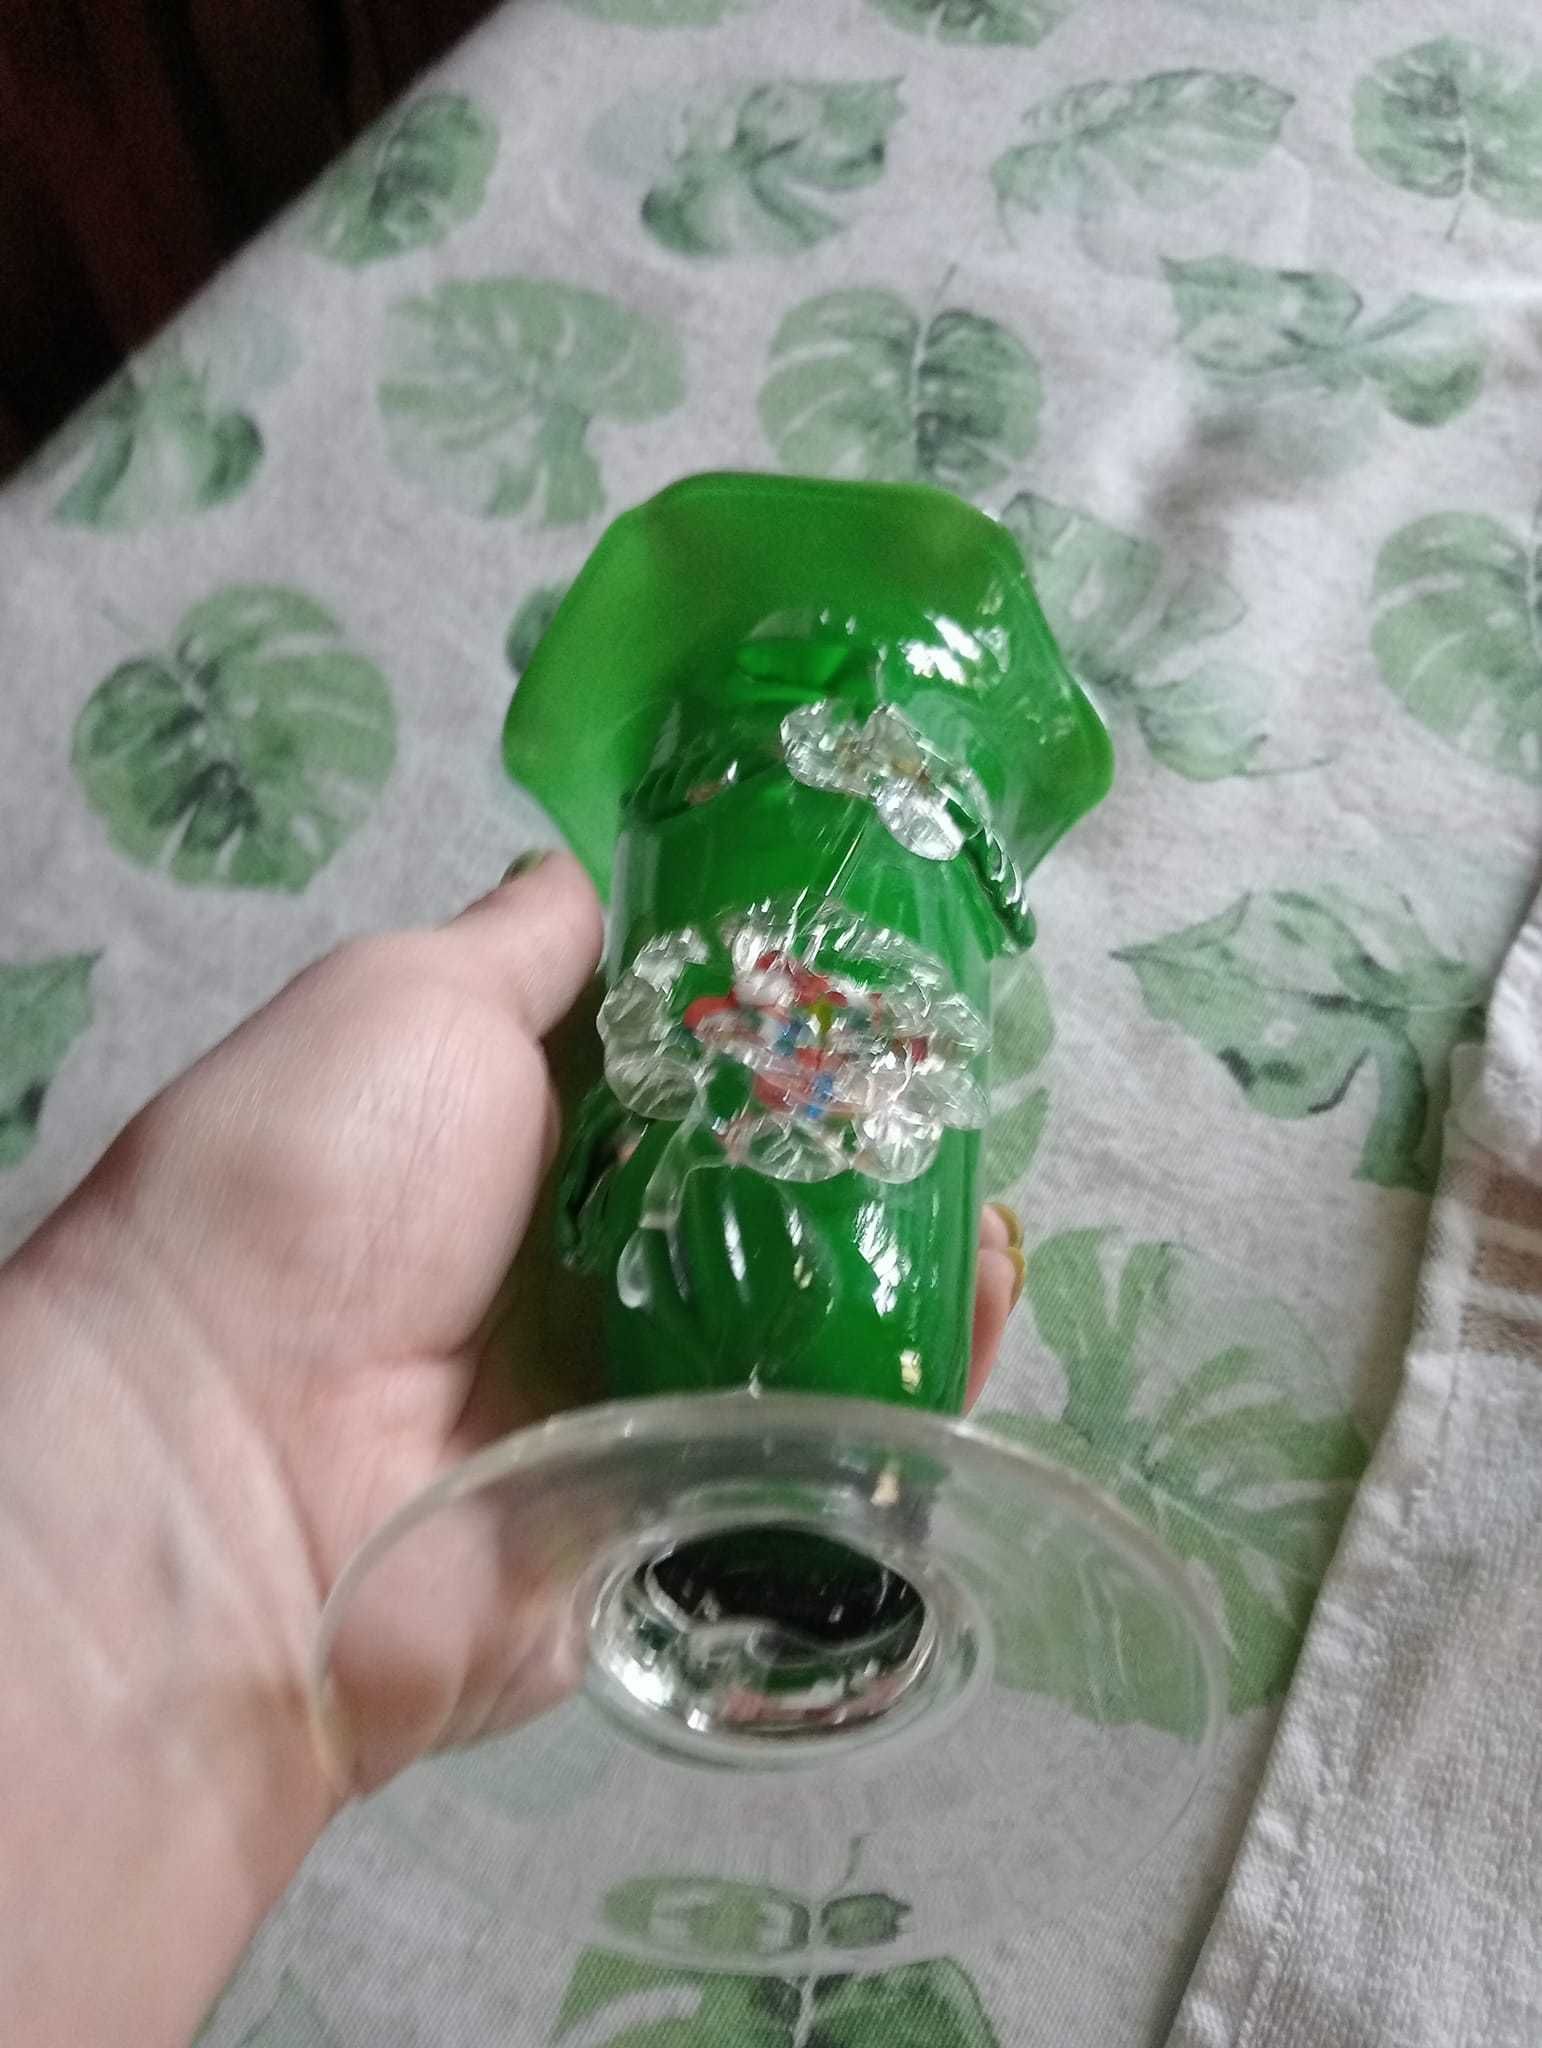 Vaso vidro verde